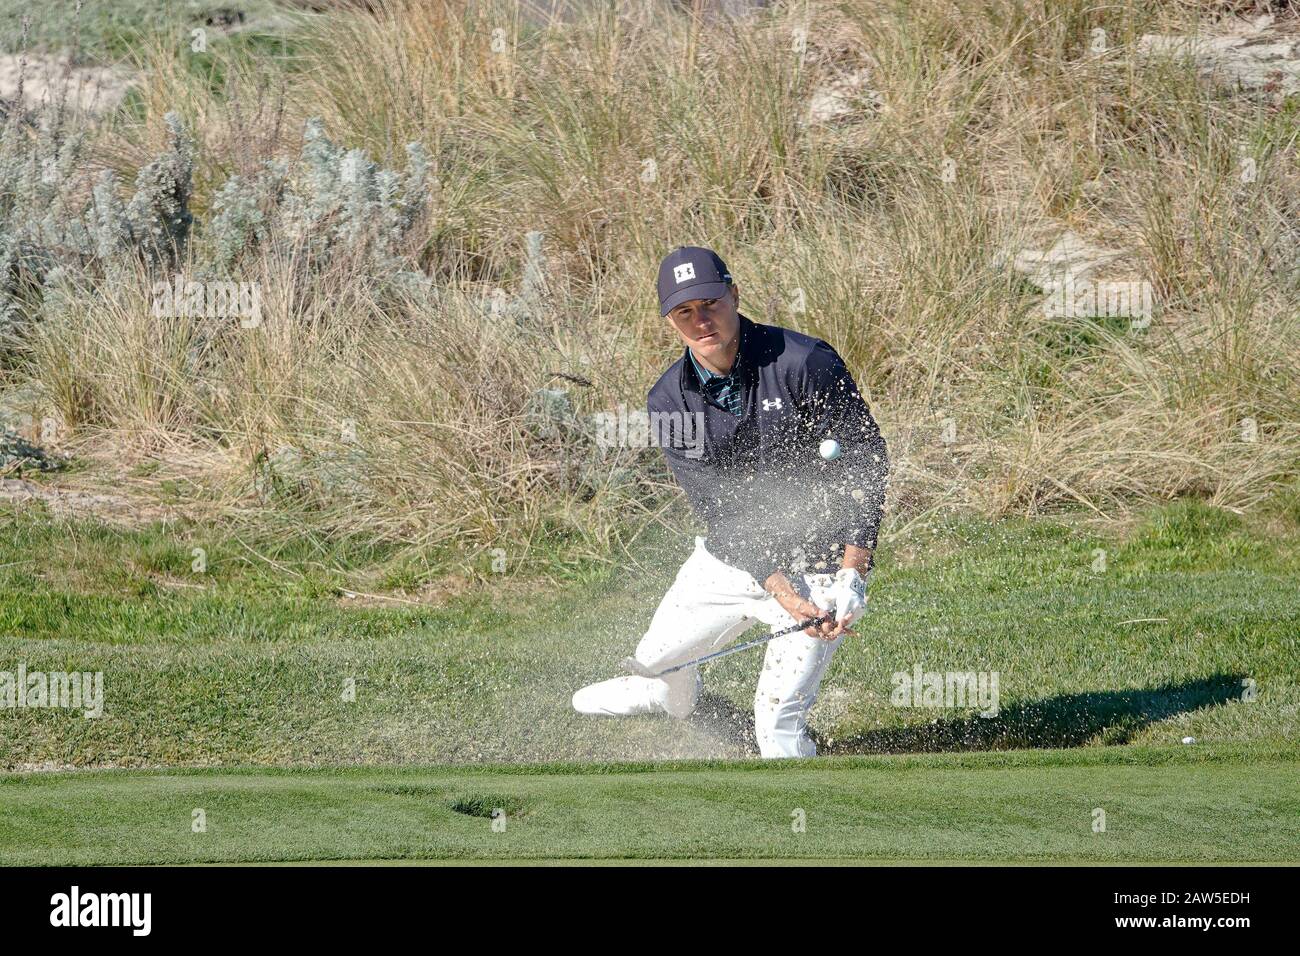 Kieselstrand, USA. Februar 2020. Monterey, Kalifornien, USA 6. Februar 2020 Jordan Spieth hat am ersten Tag des AT&T Pro-Am PGA Golf Events in Pebble Beach Credit einen Testbunkerschuss auf dem 4. Green in Spyglass Hill gemacht: Motofoto/Alamy Live News Stockfoto